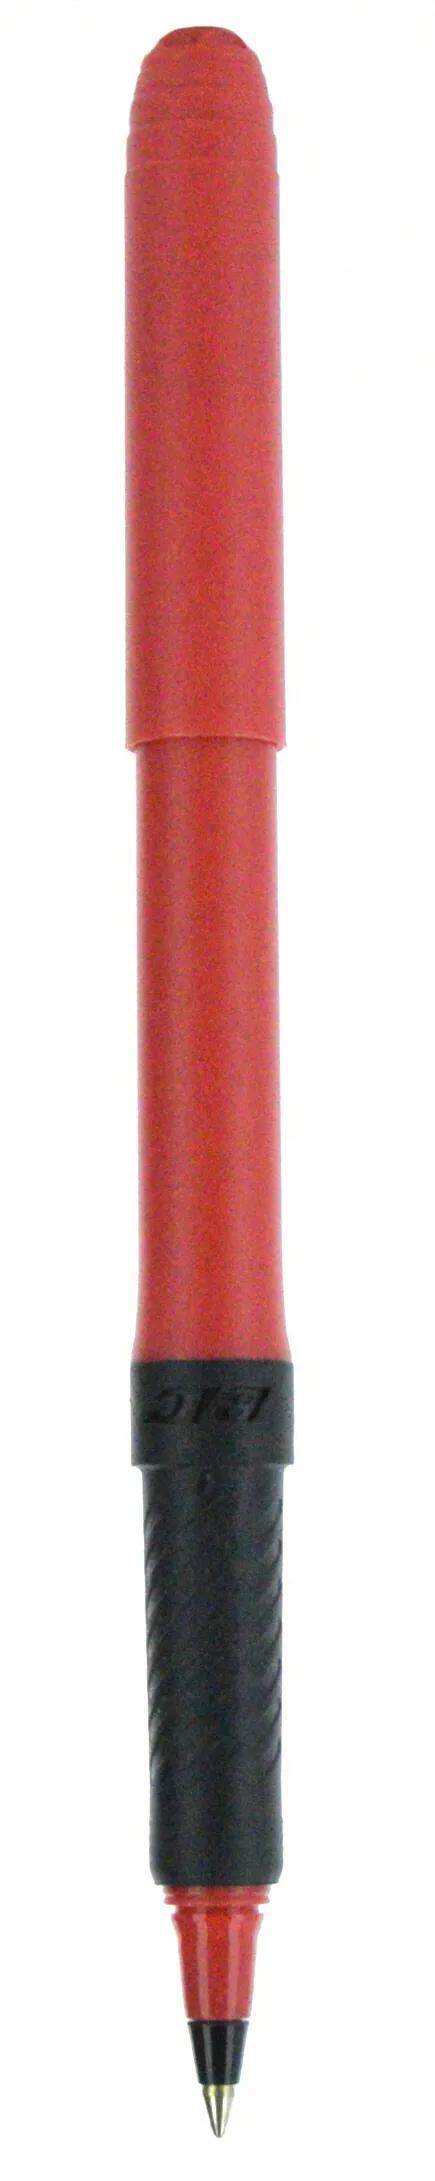 BIC® Grip Roller Pen 64 of 147